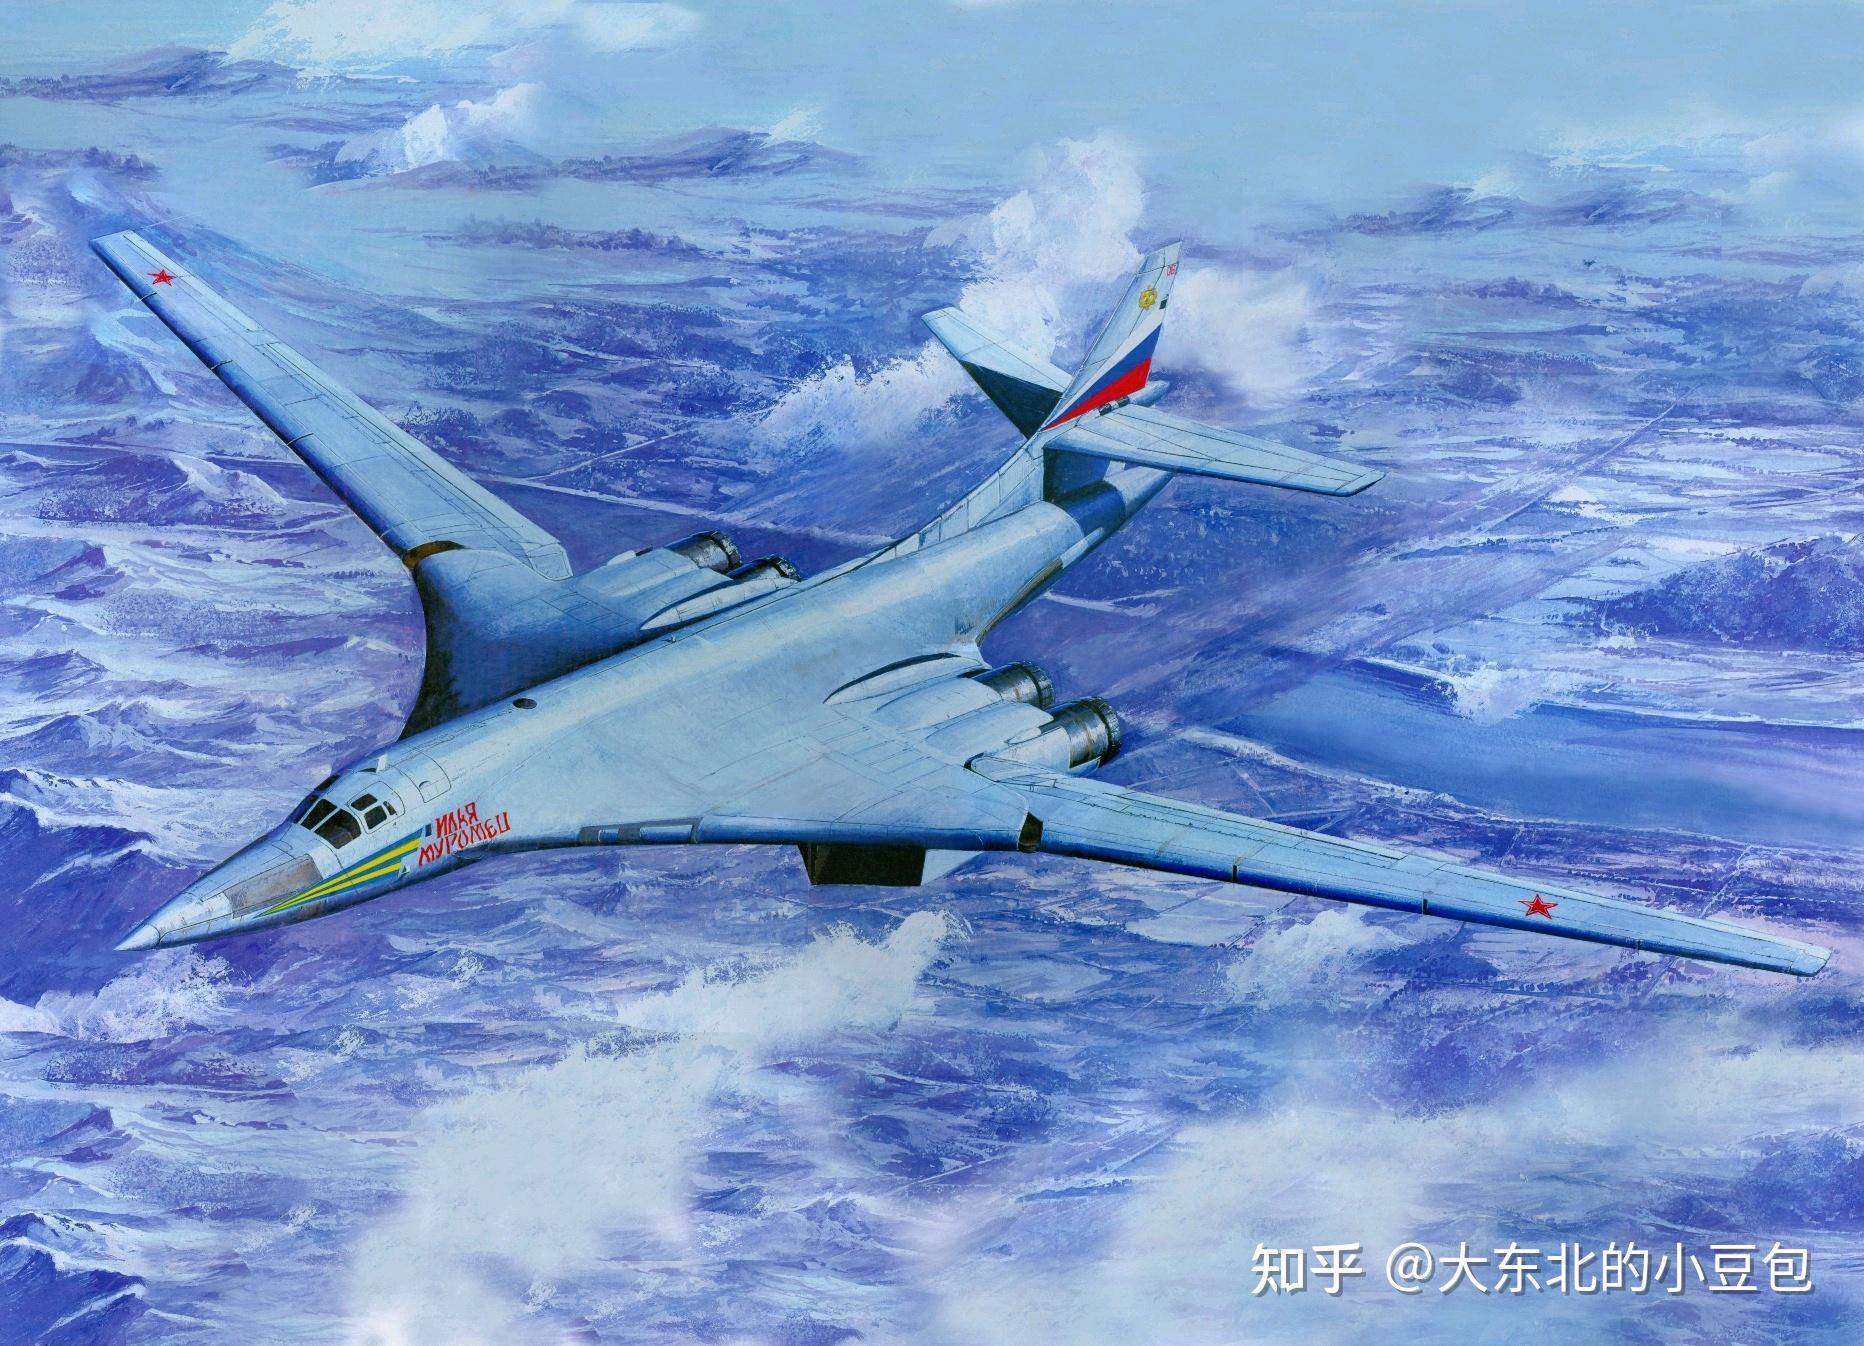 67仅凭一机之力,让中国轰炸机进化了三代,中国轰6发展简史